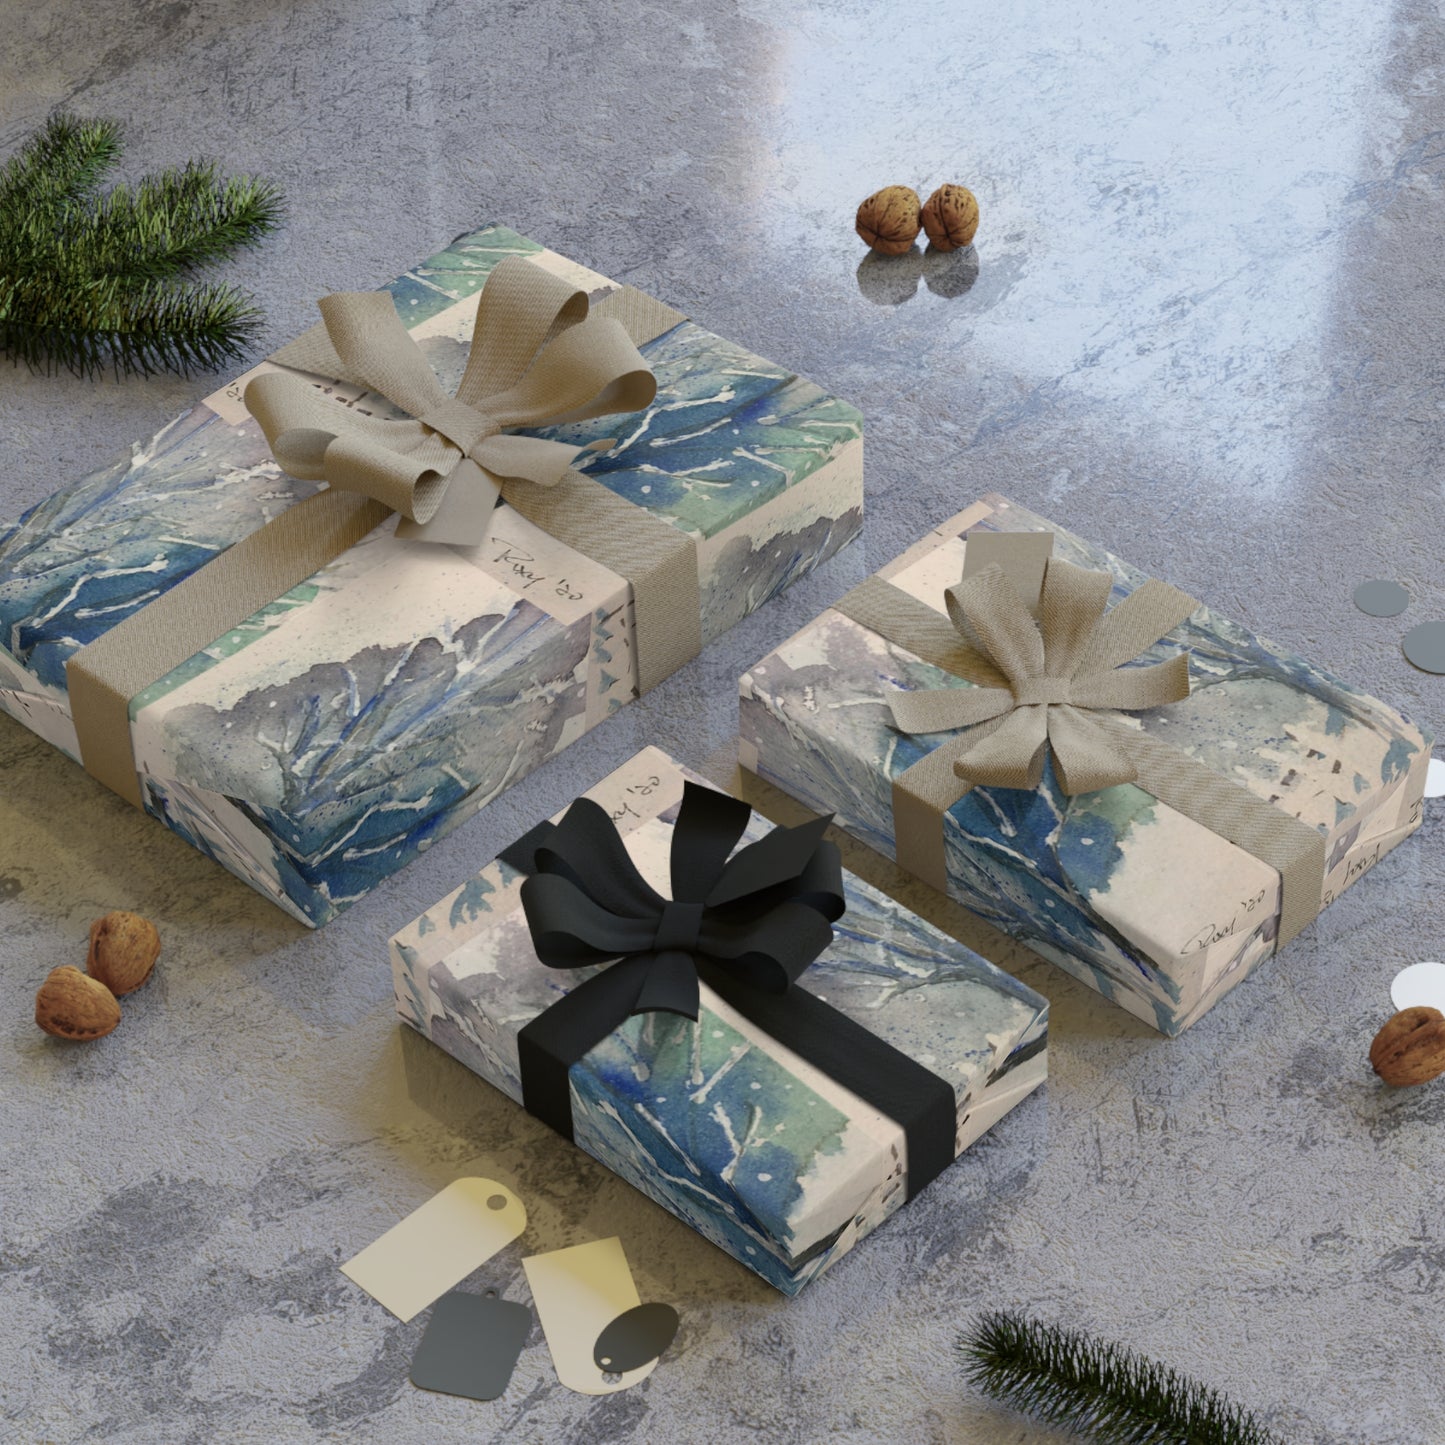 Papel de regalo elegante con árboles de invierno, 1 pieza